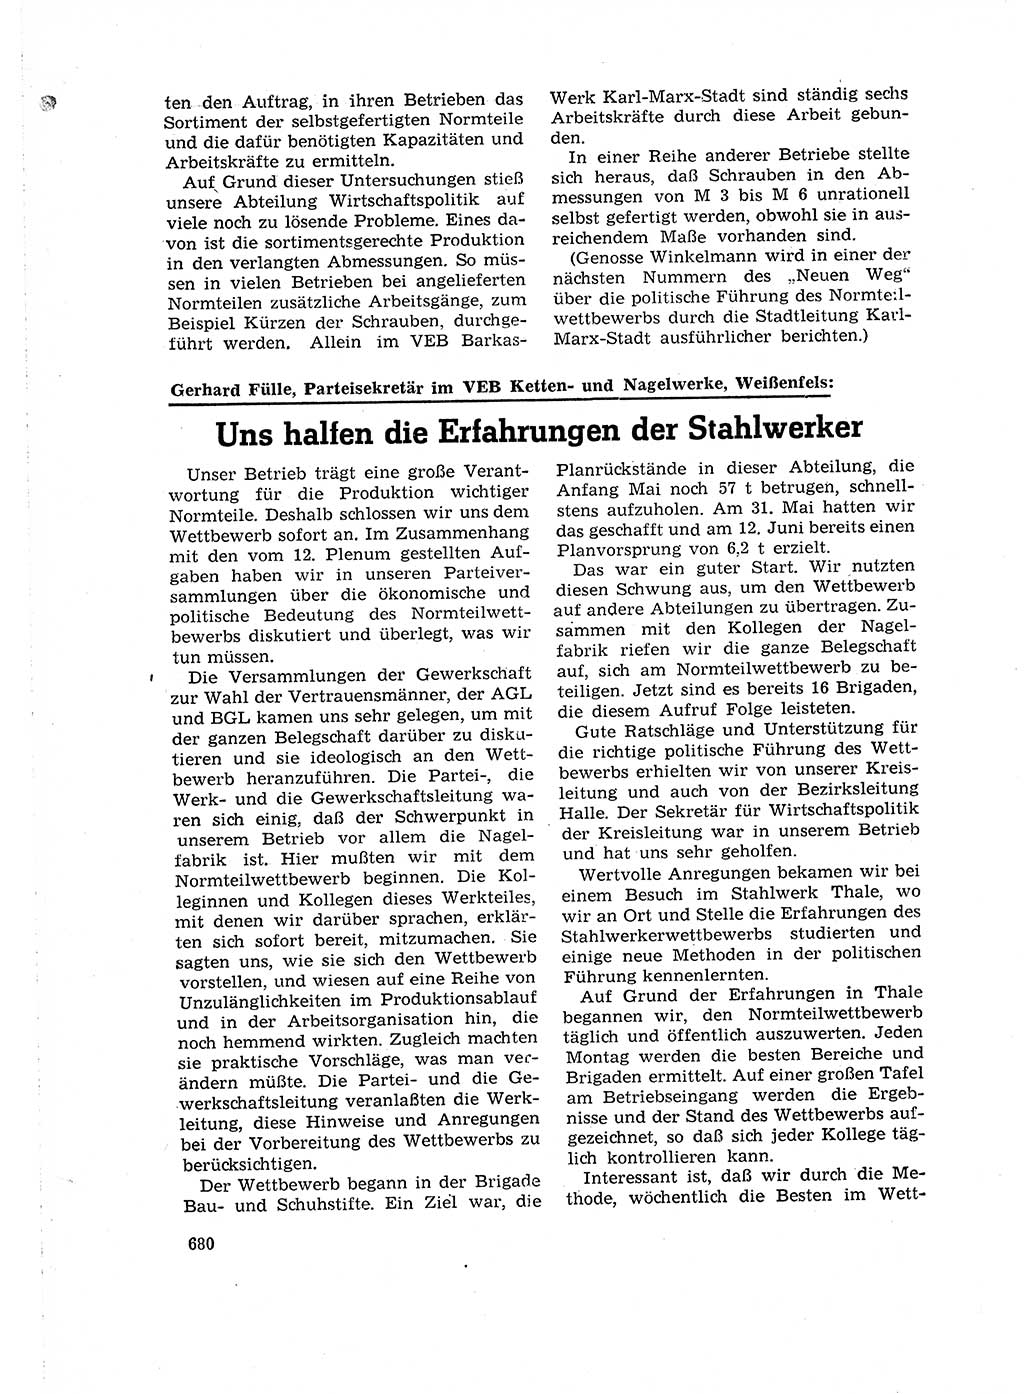 Neuer Weg (NW), Organ des Zentralkomitees (ZK) der SED (Sozialistische Einheitspartei Deutschlands) für Fragen des Parteilebens, 16. Jahrgang [Deutsche Demokratische Republik (DDR)] 1961, Seite 680 (NW ZK SED DDR 1961, S. 680)